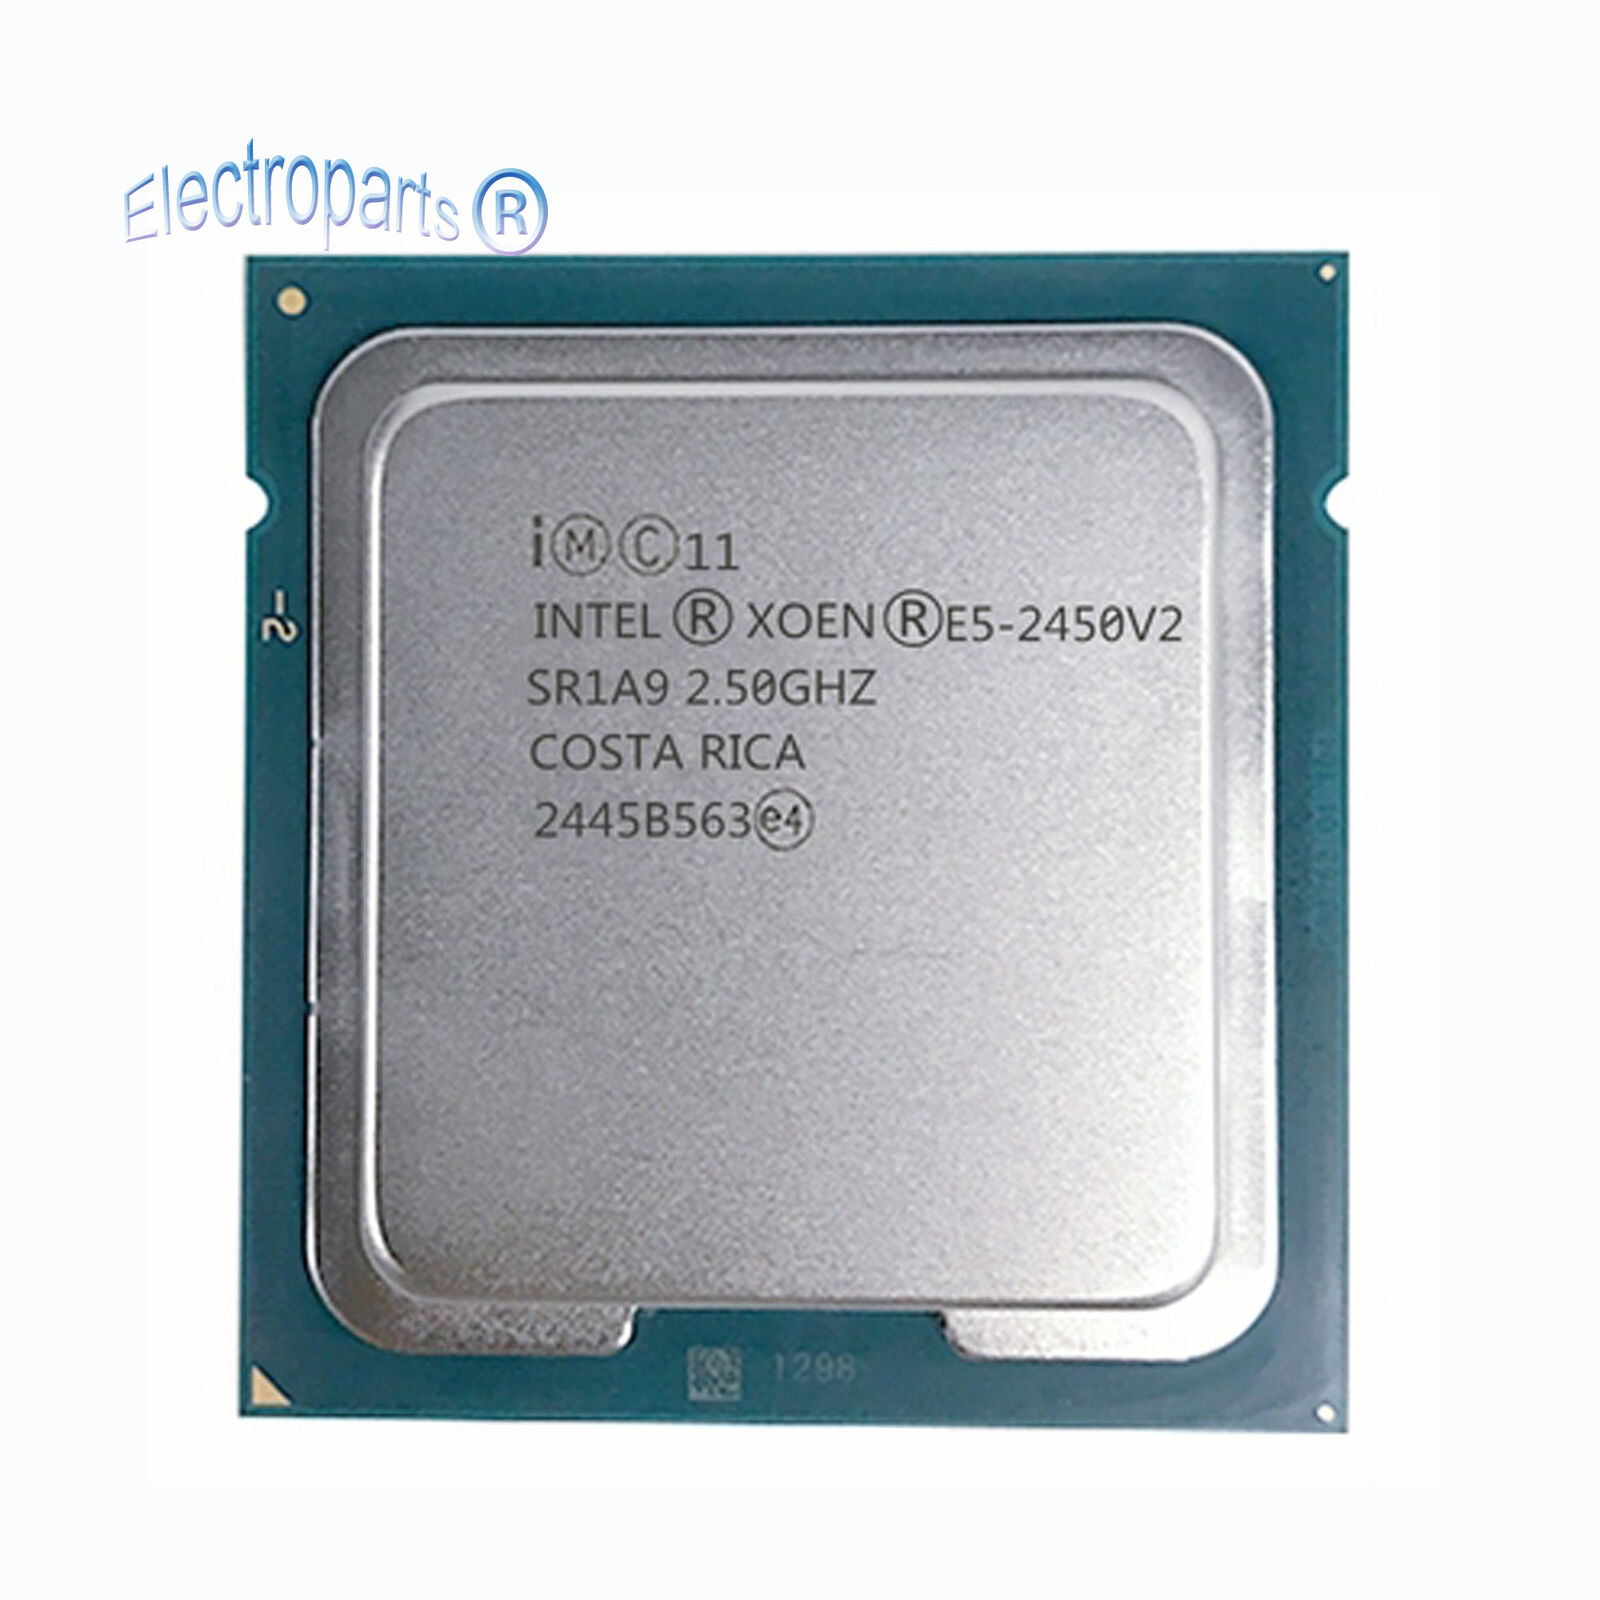 Intel Xeon E5-2450 V2 E5-2450V2 2.5GHz 8 Core 20M SR1A9 LGA1356 CPU Processor